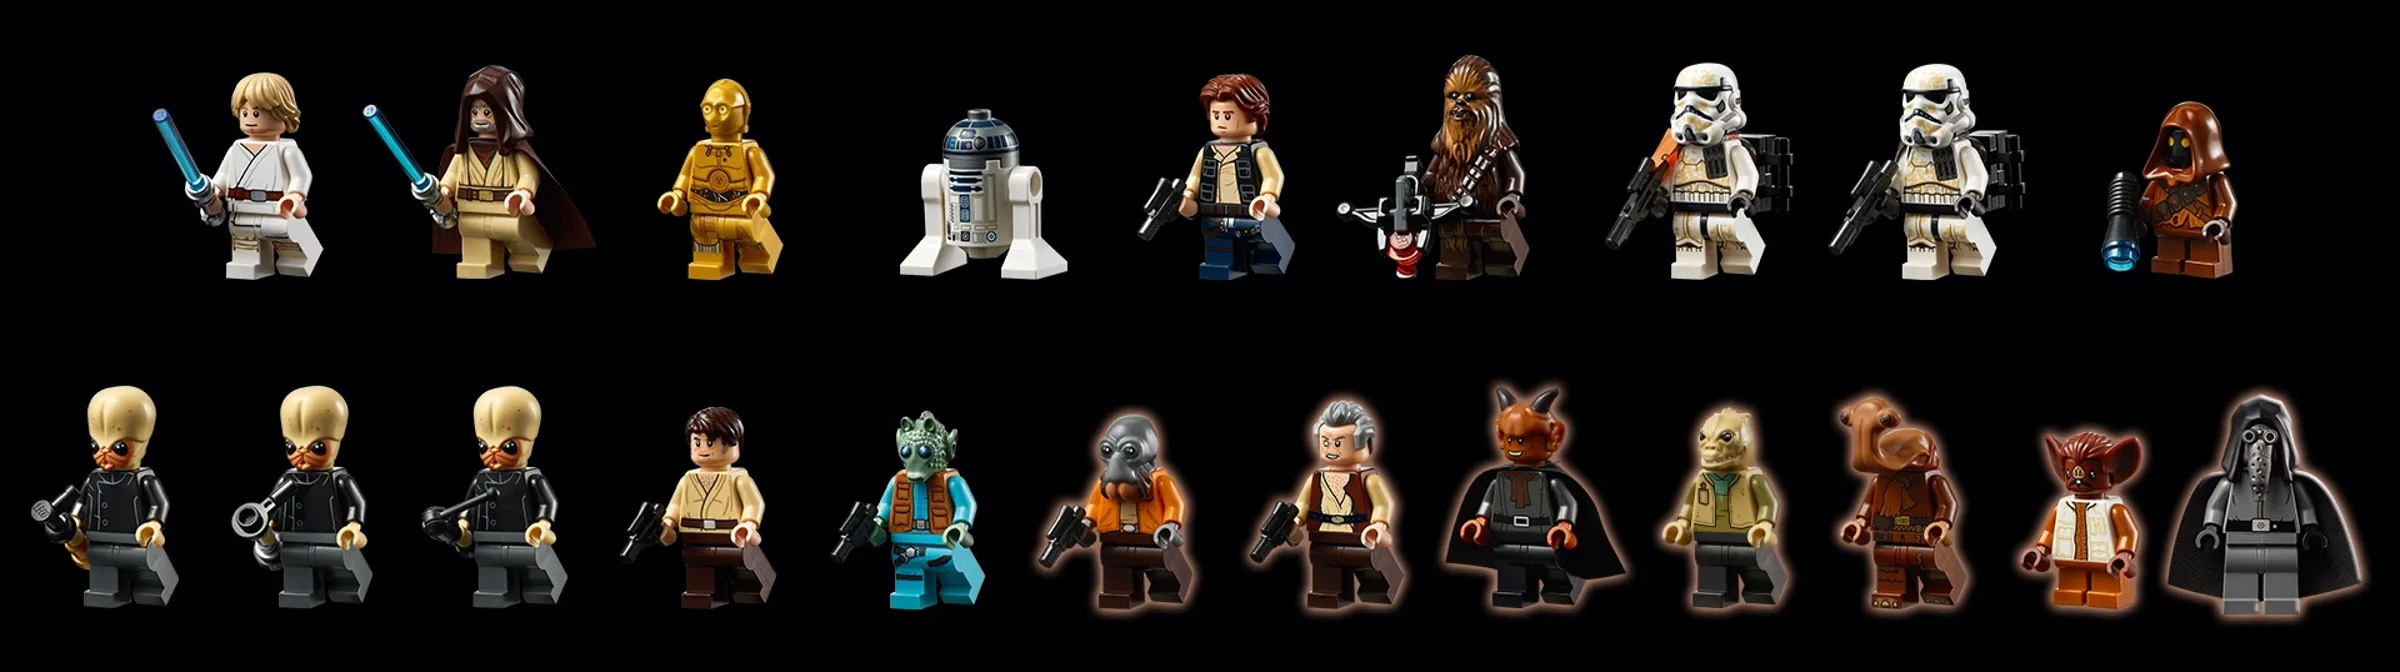 Star Wars Mos Eisley Cantina LEGO set finally goes full-size YOLO - SlashGe...